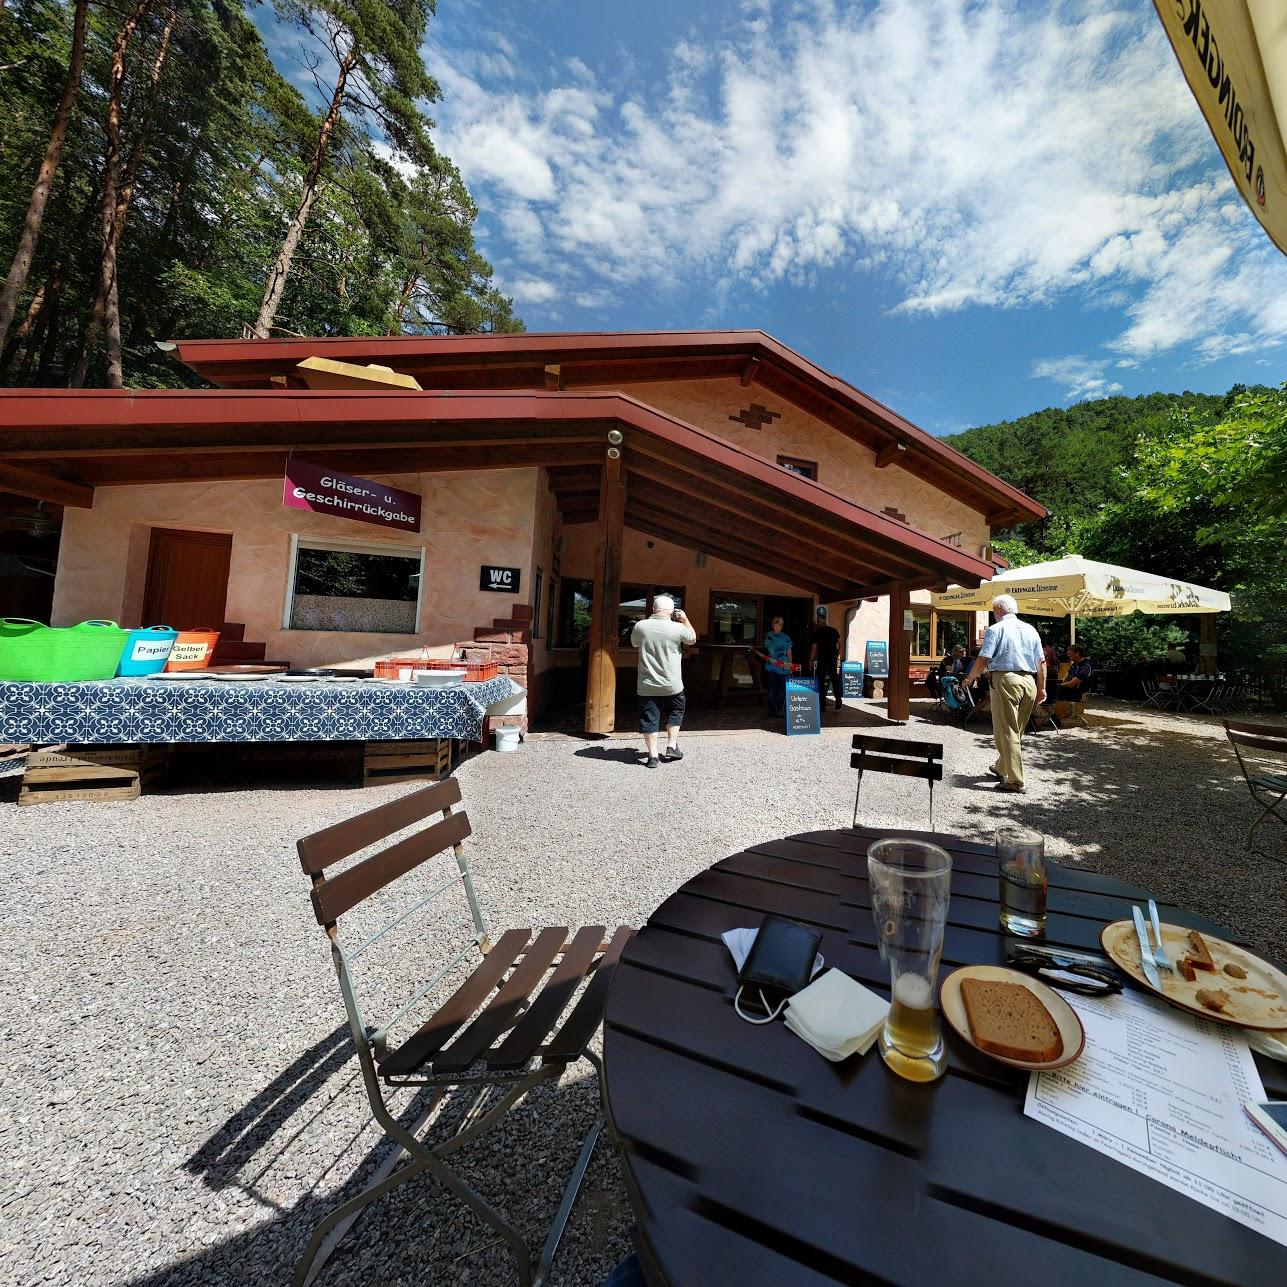 Restaurant "Paddelweiher-Hütte" in  Hauenstein